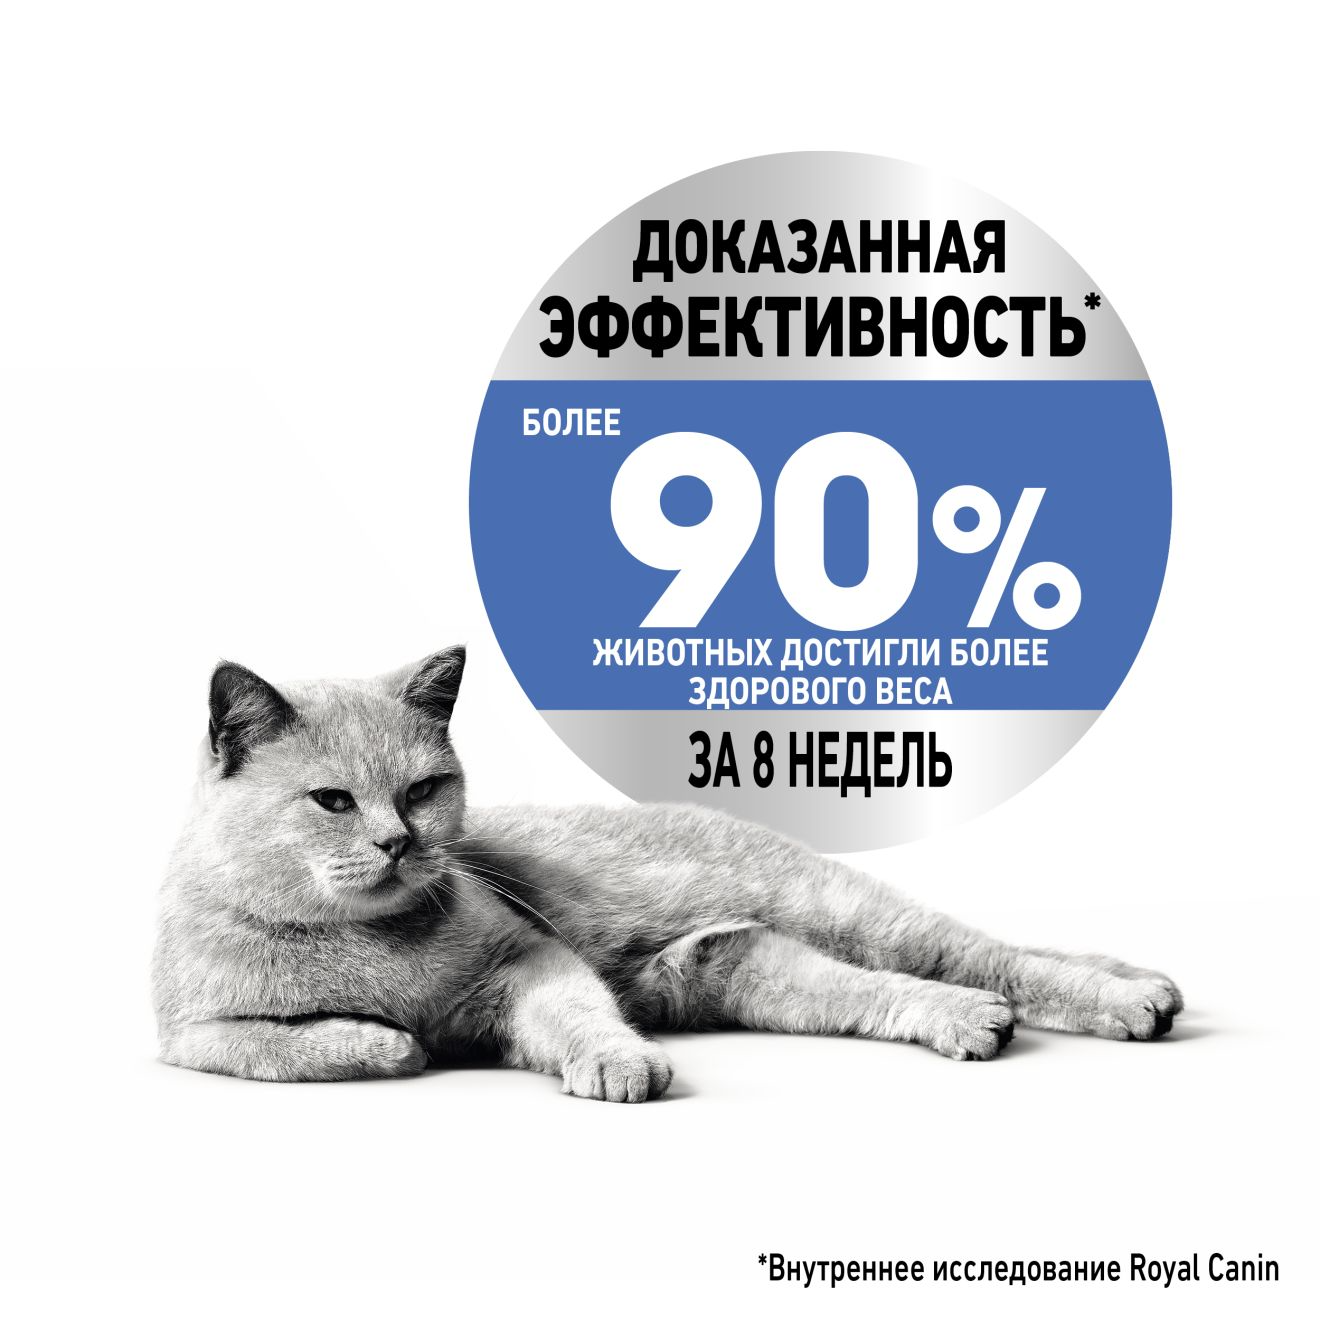 Корм сухой Royal Canin Light Weight Care для взрослых кошек, профилактика лишнего веса,  1,5 кг